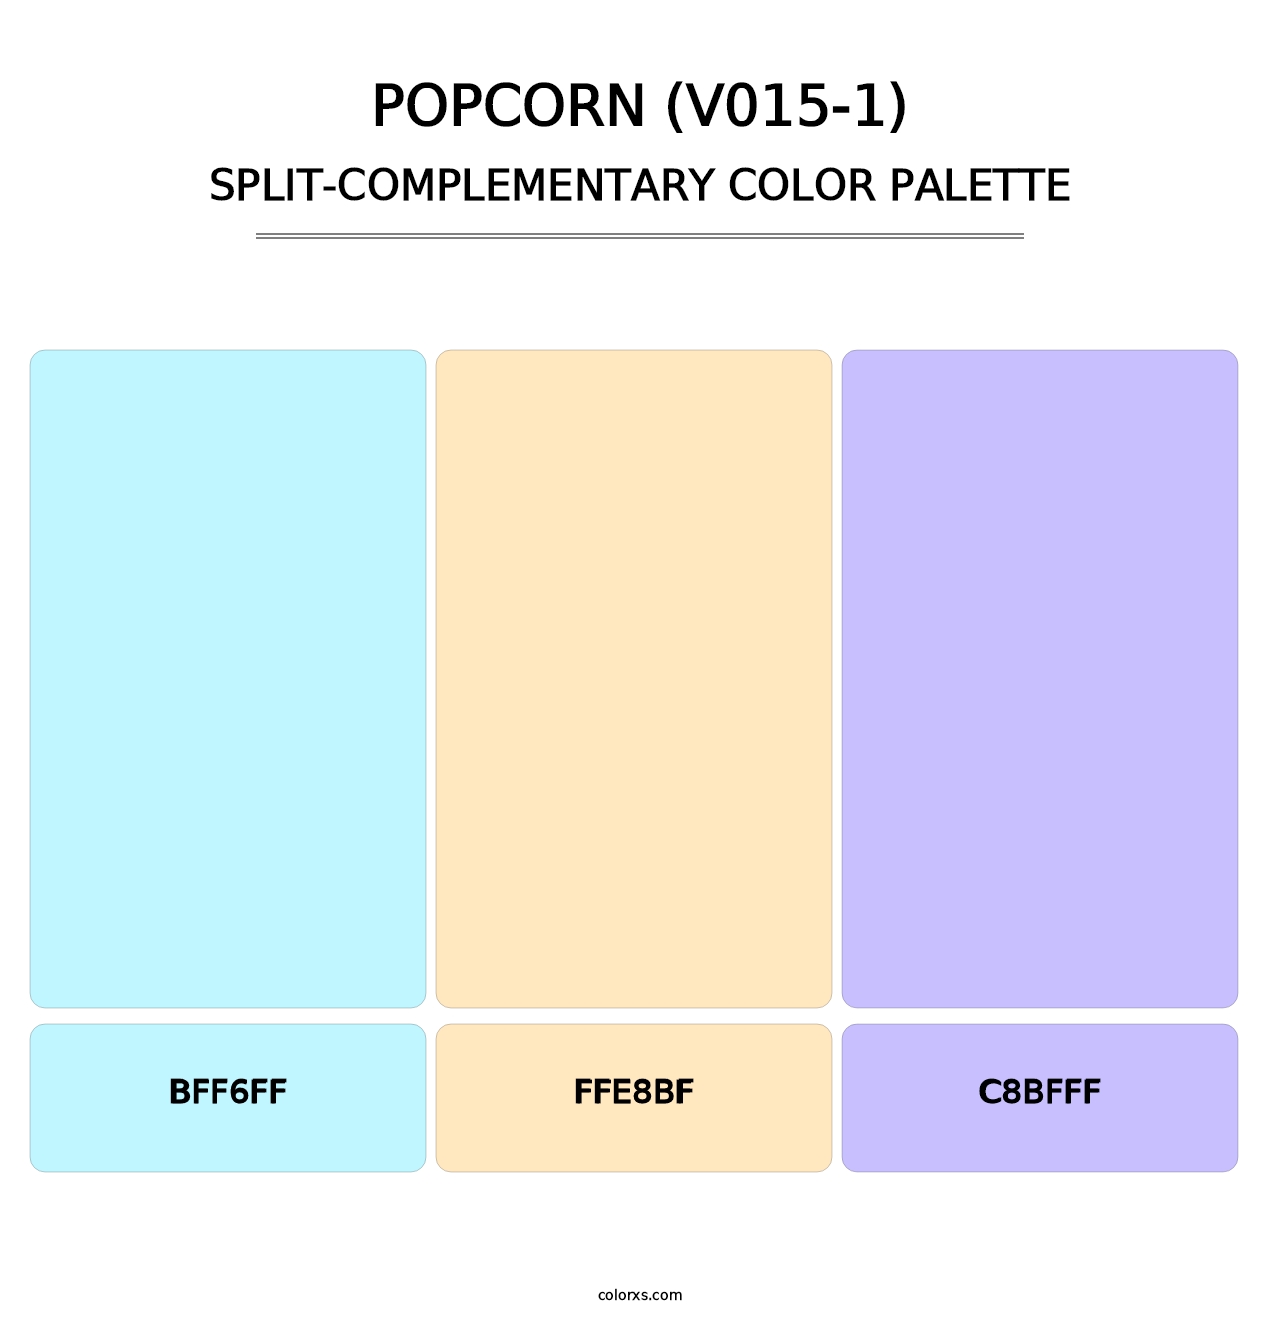 Popcorn (V015-1) - Split-Complementary Color Palette